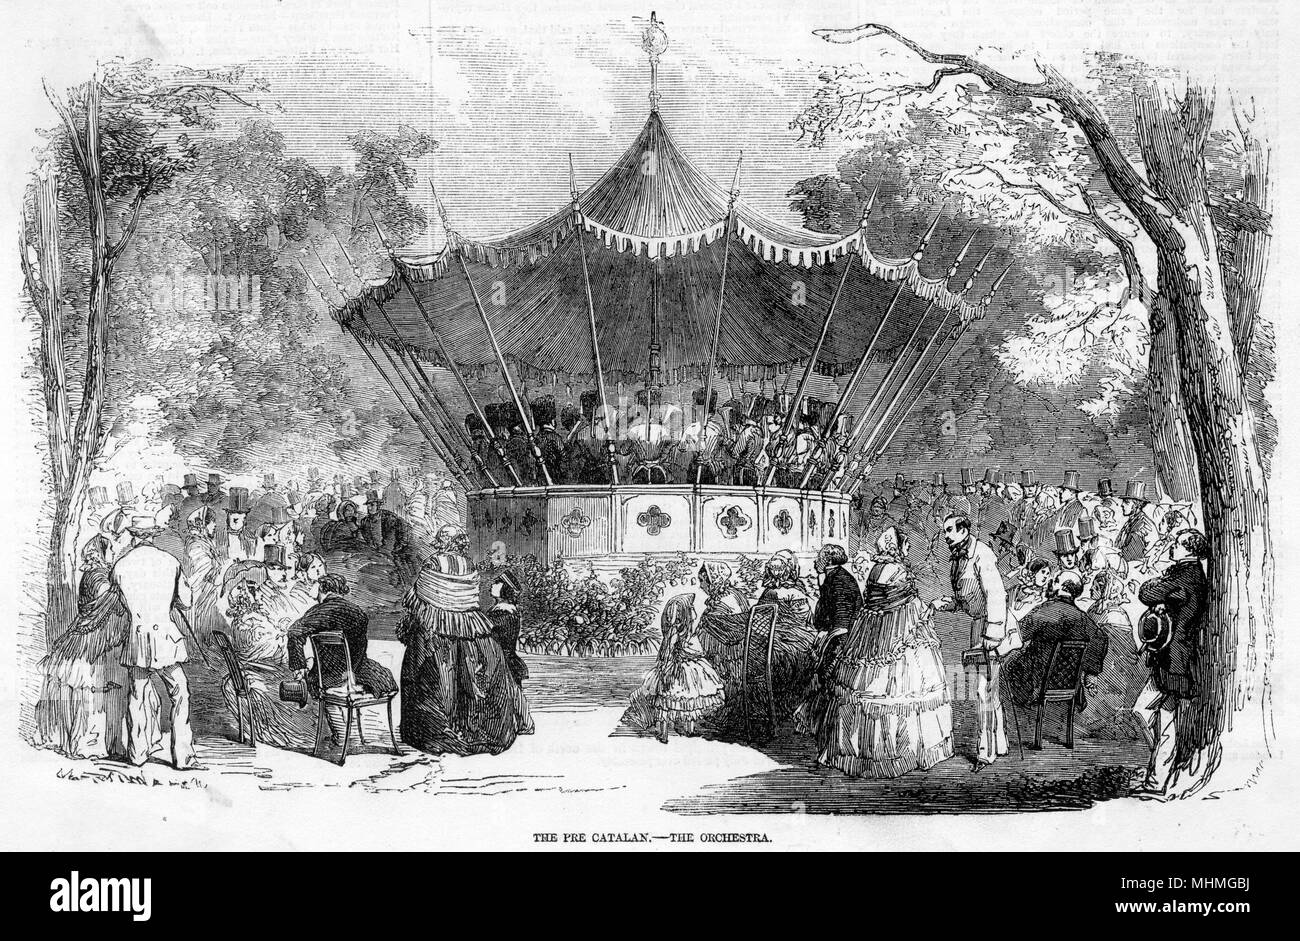 Un quiosco en el Pre Catelan, en el Bois de Boulogne, en París, con la gente reunida en torno a escuchar un concierto. Fecha: 1856 Foto de stock